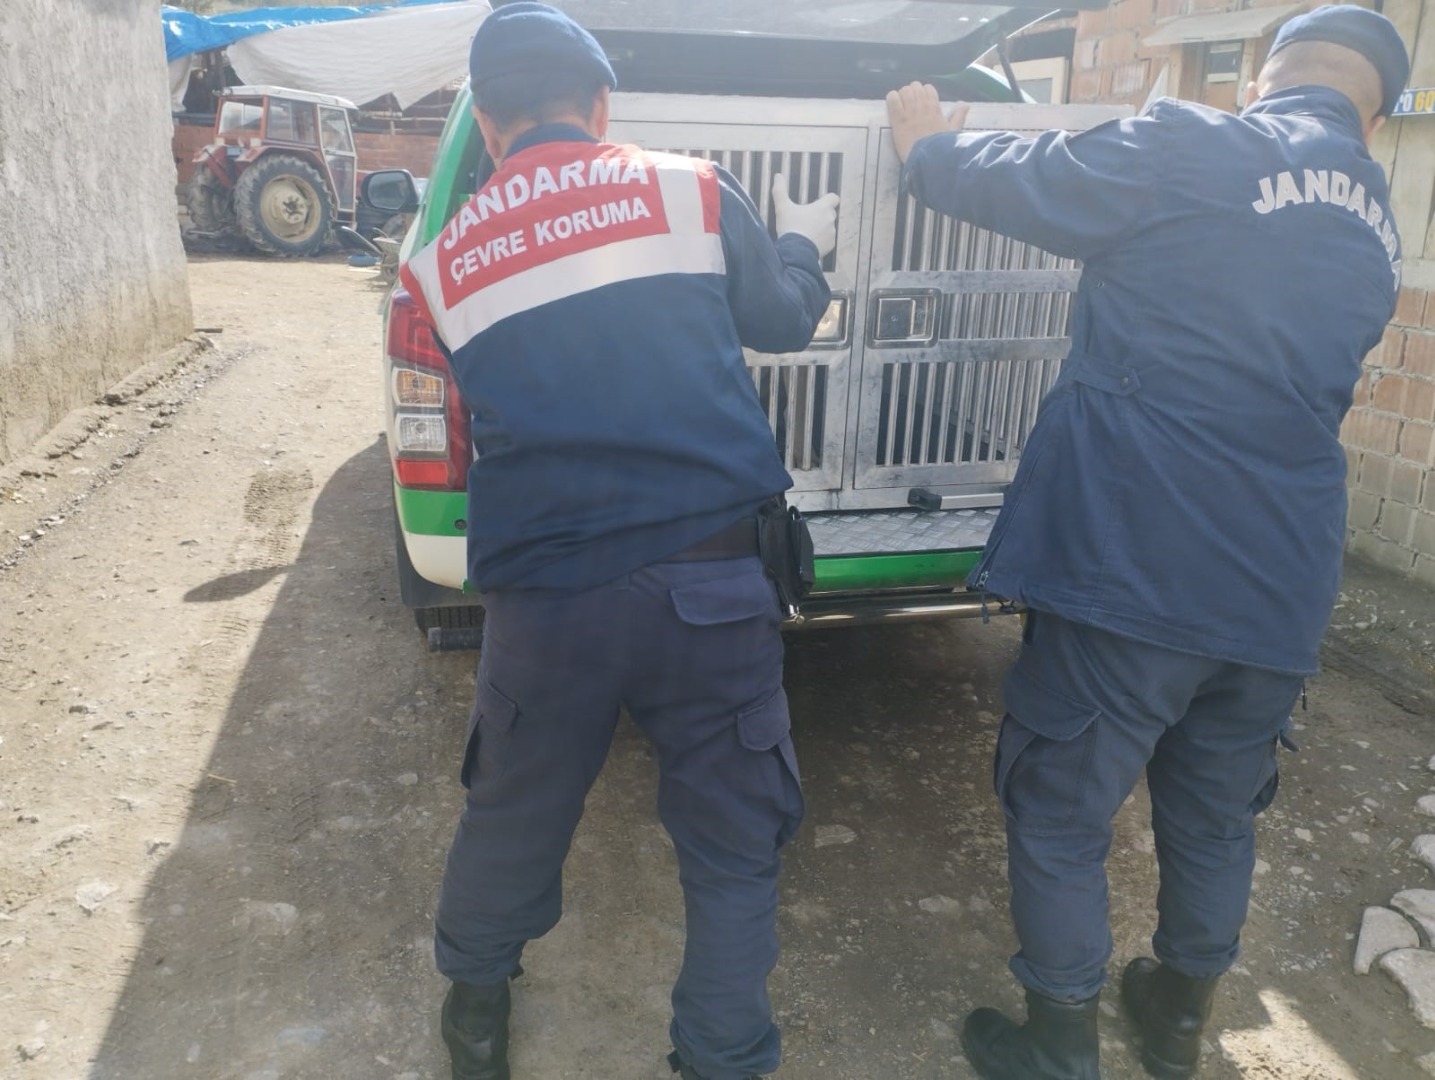 Tokat'ta yaralı köpek tedavi altına alındı